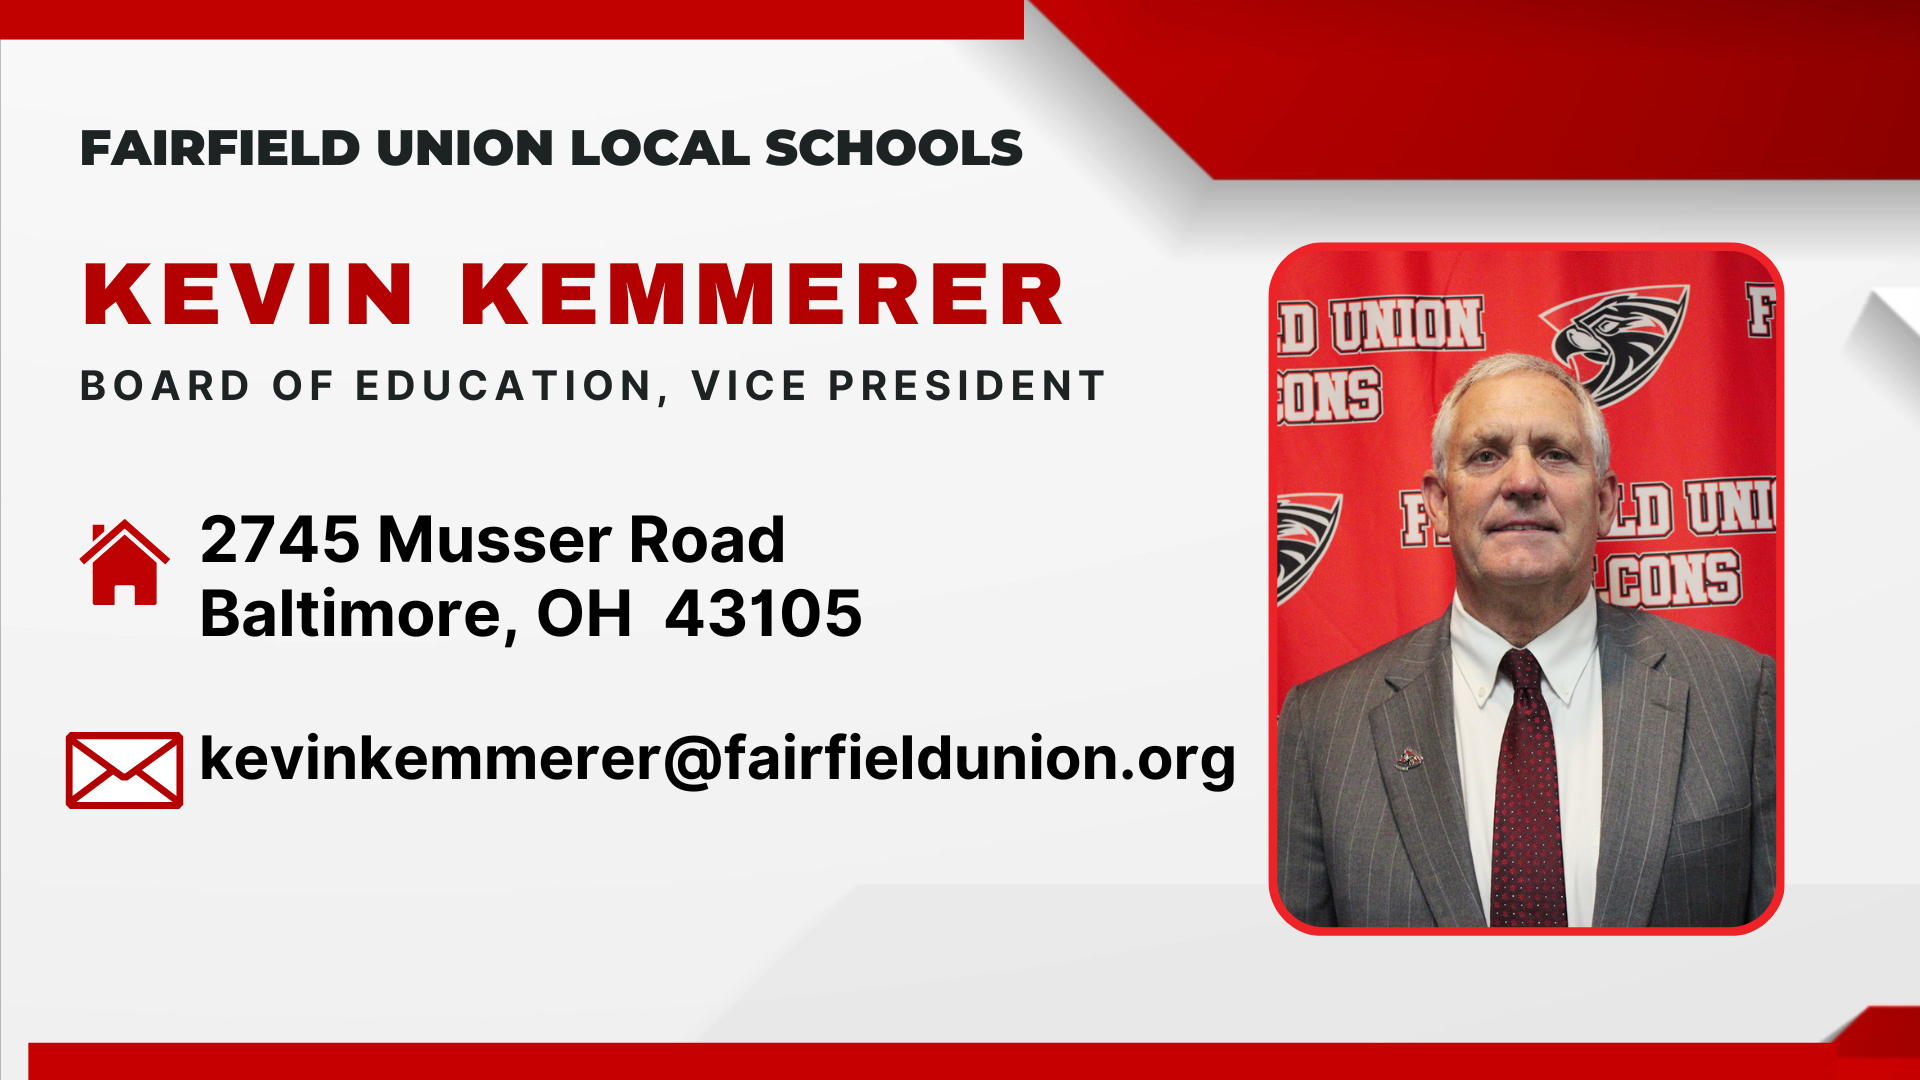 Kevin Kemmerer, Board of Education Vice President